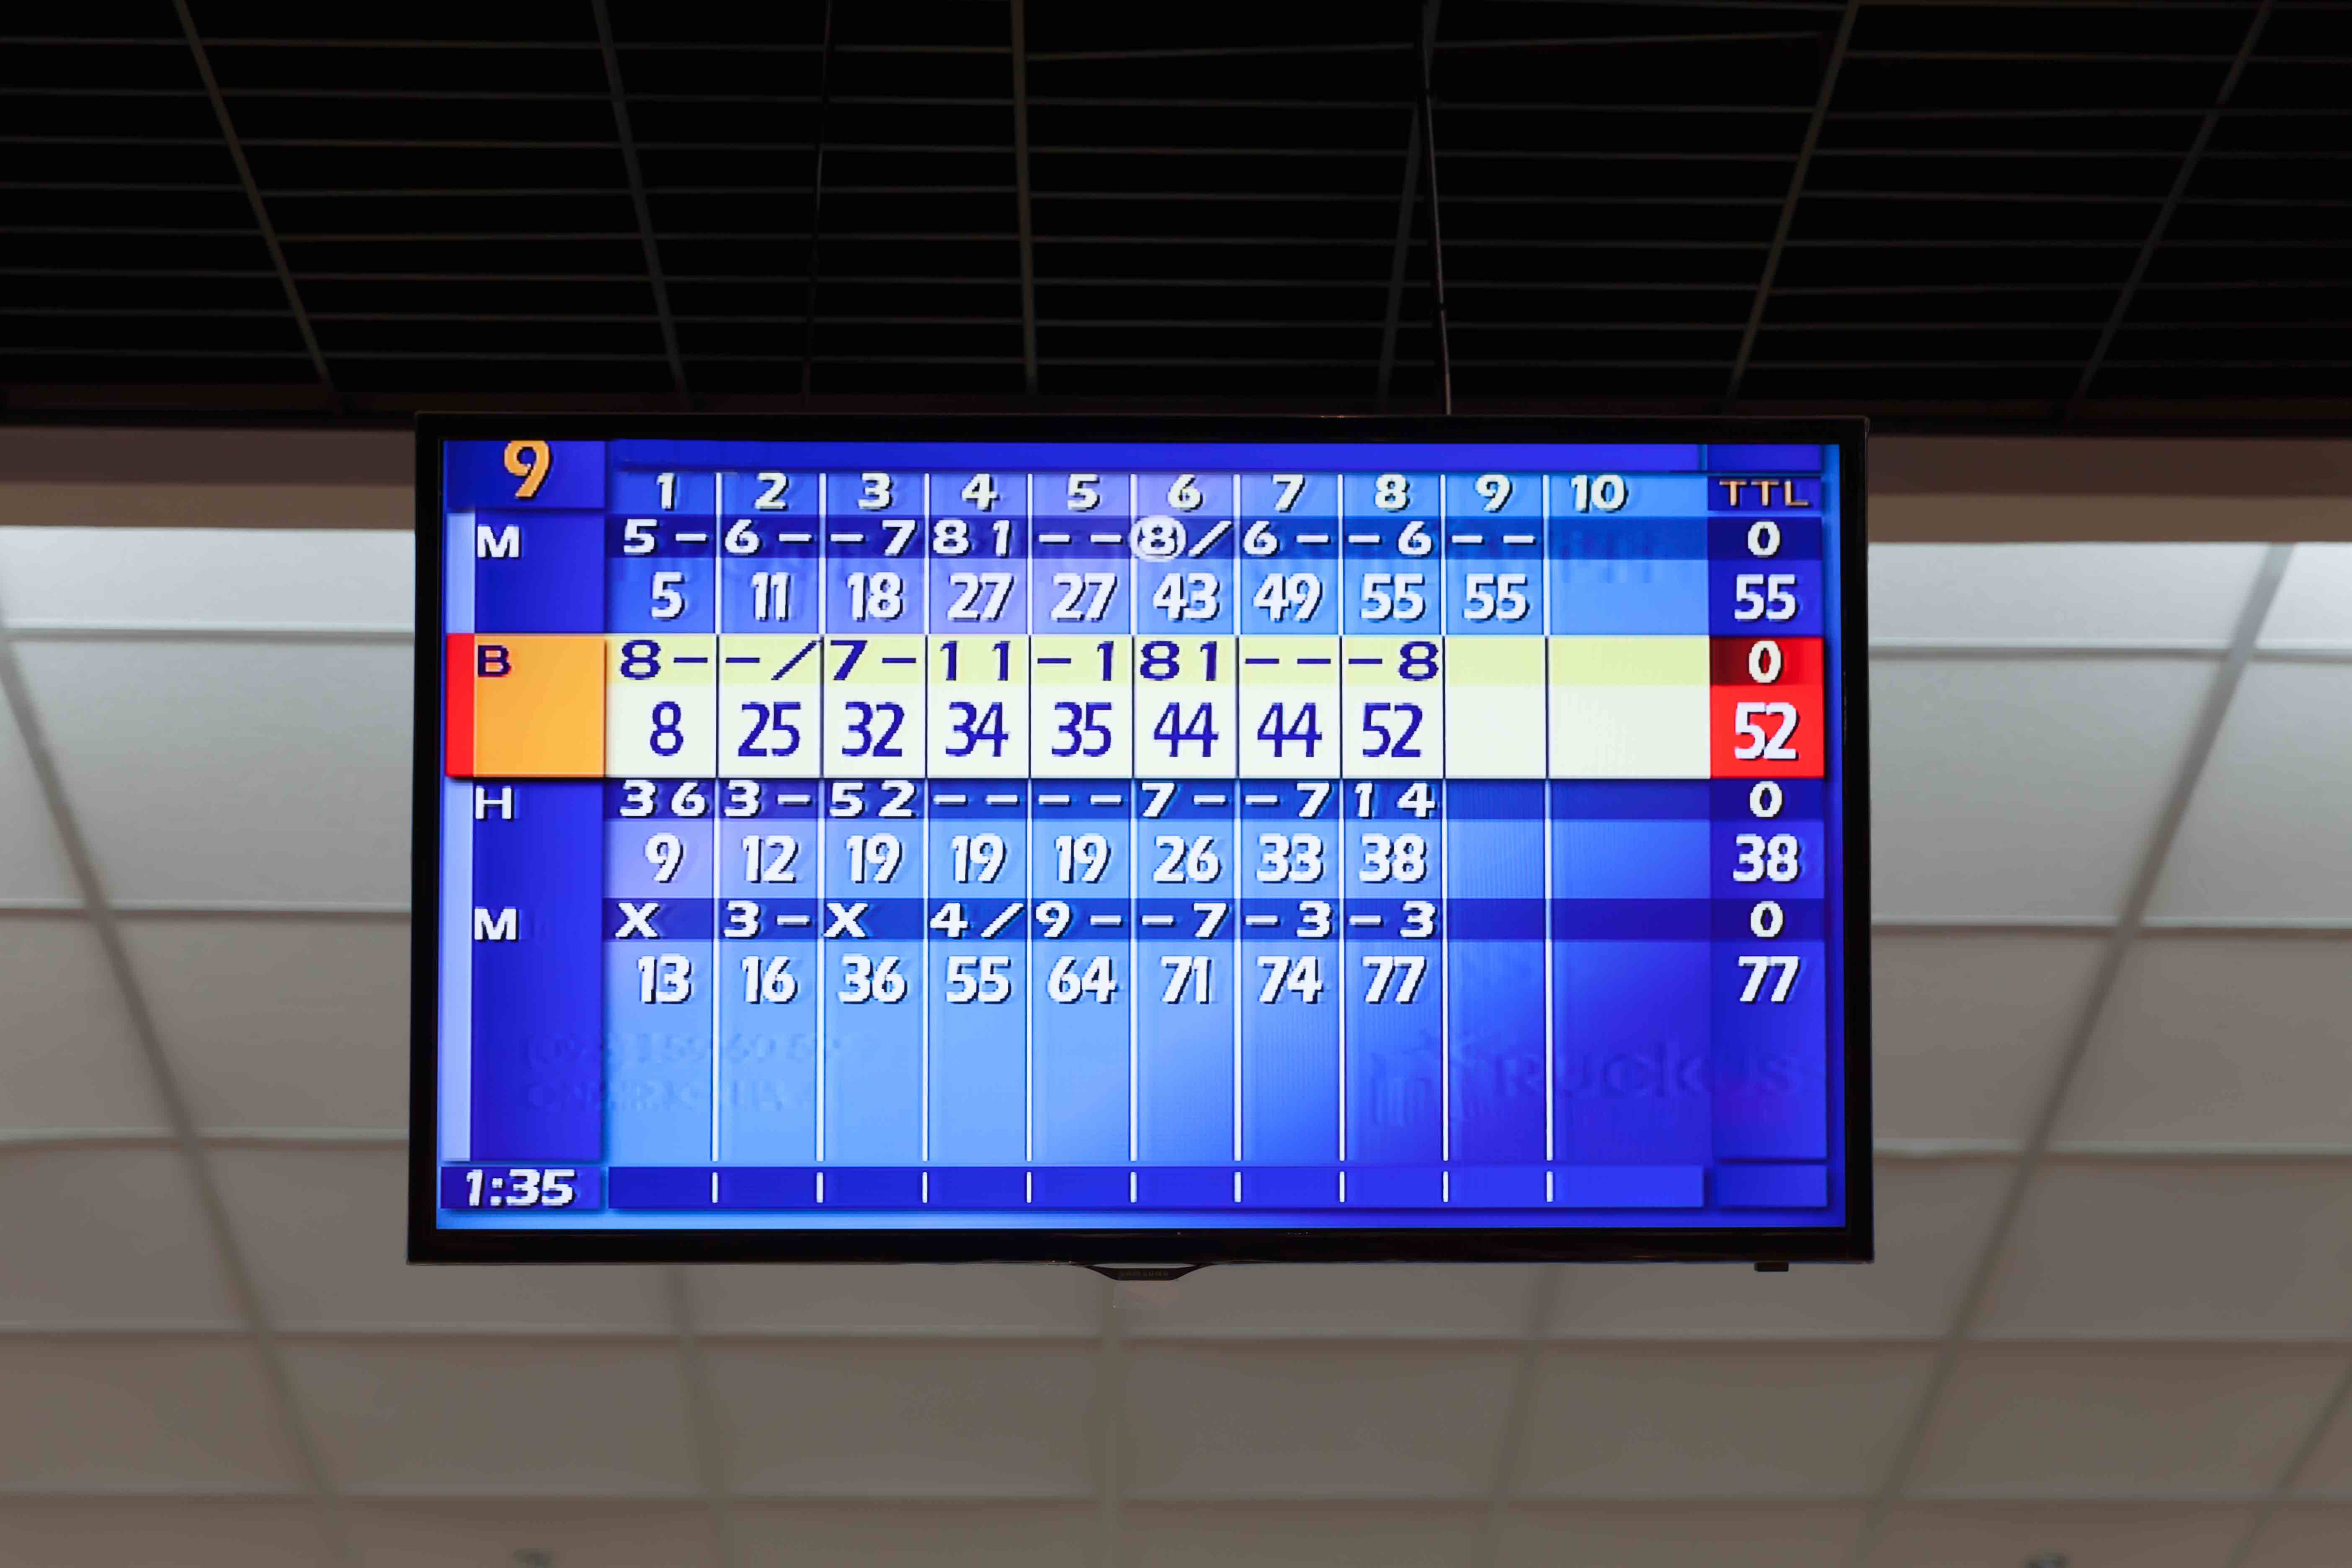 Bowling scores